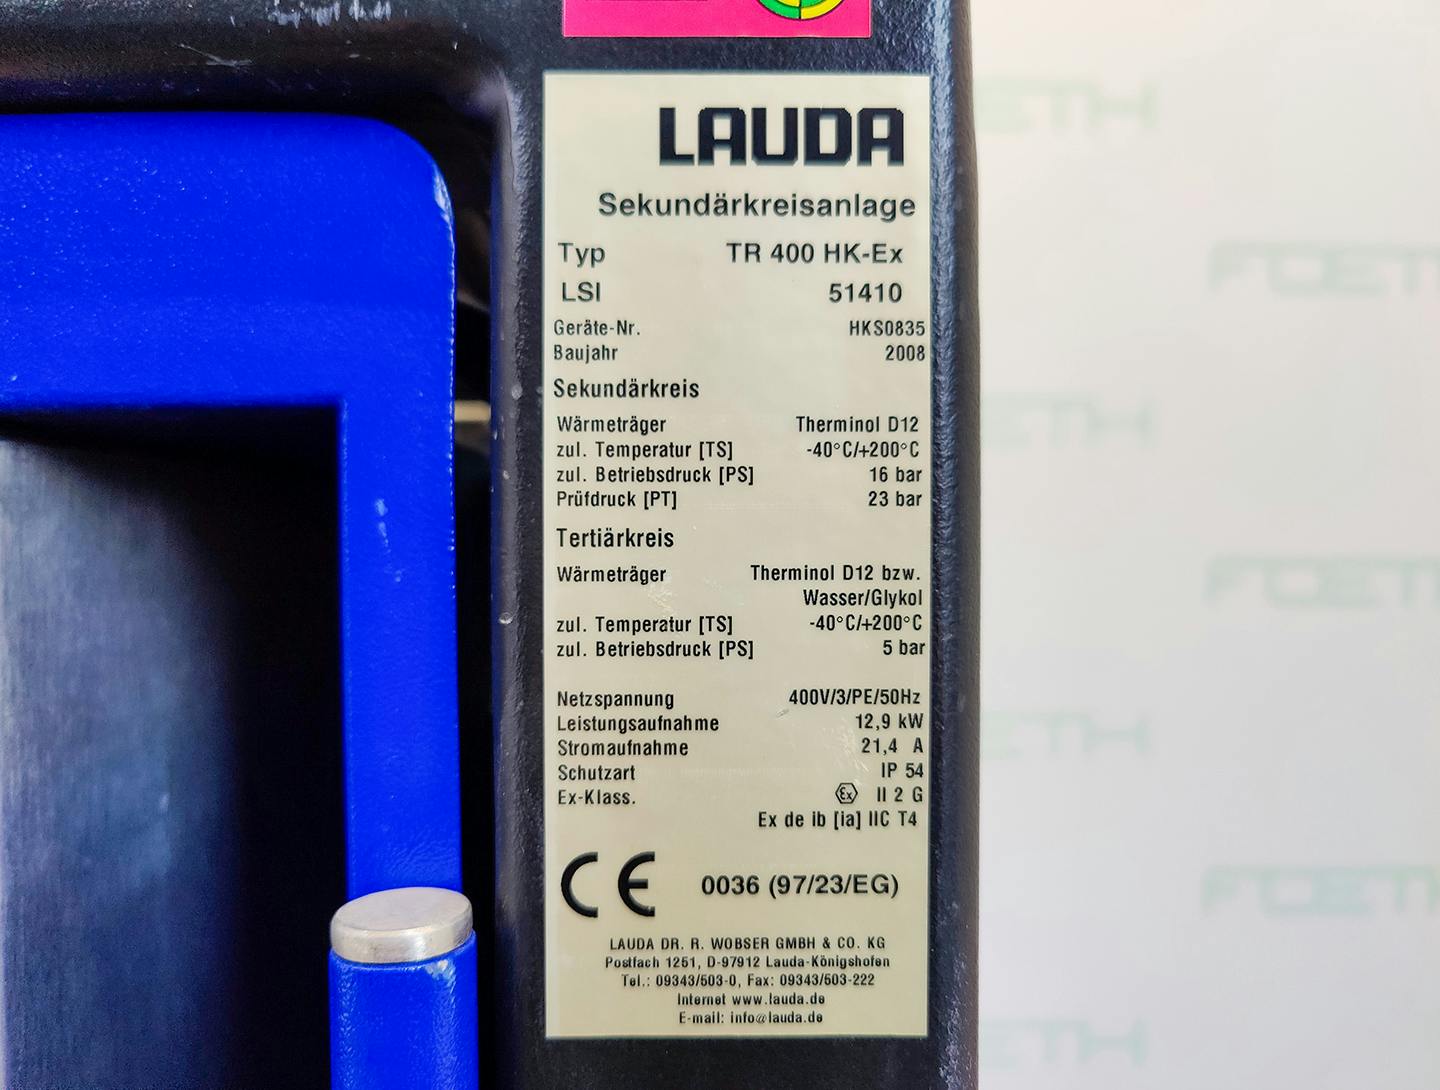 Lauda TR400 HK-EX "secondary circuit system" - Temperature control unit - image 7